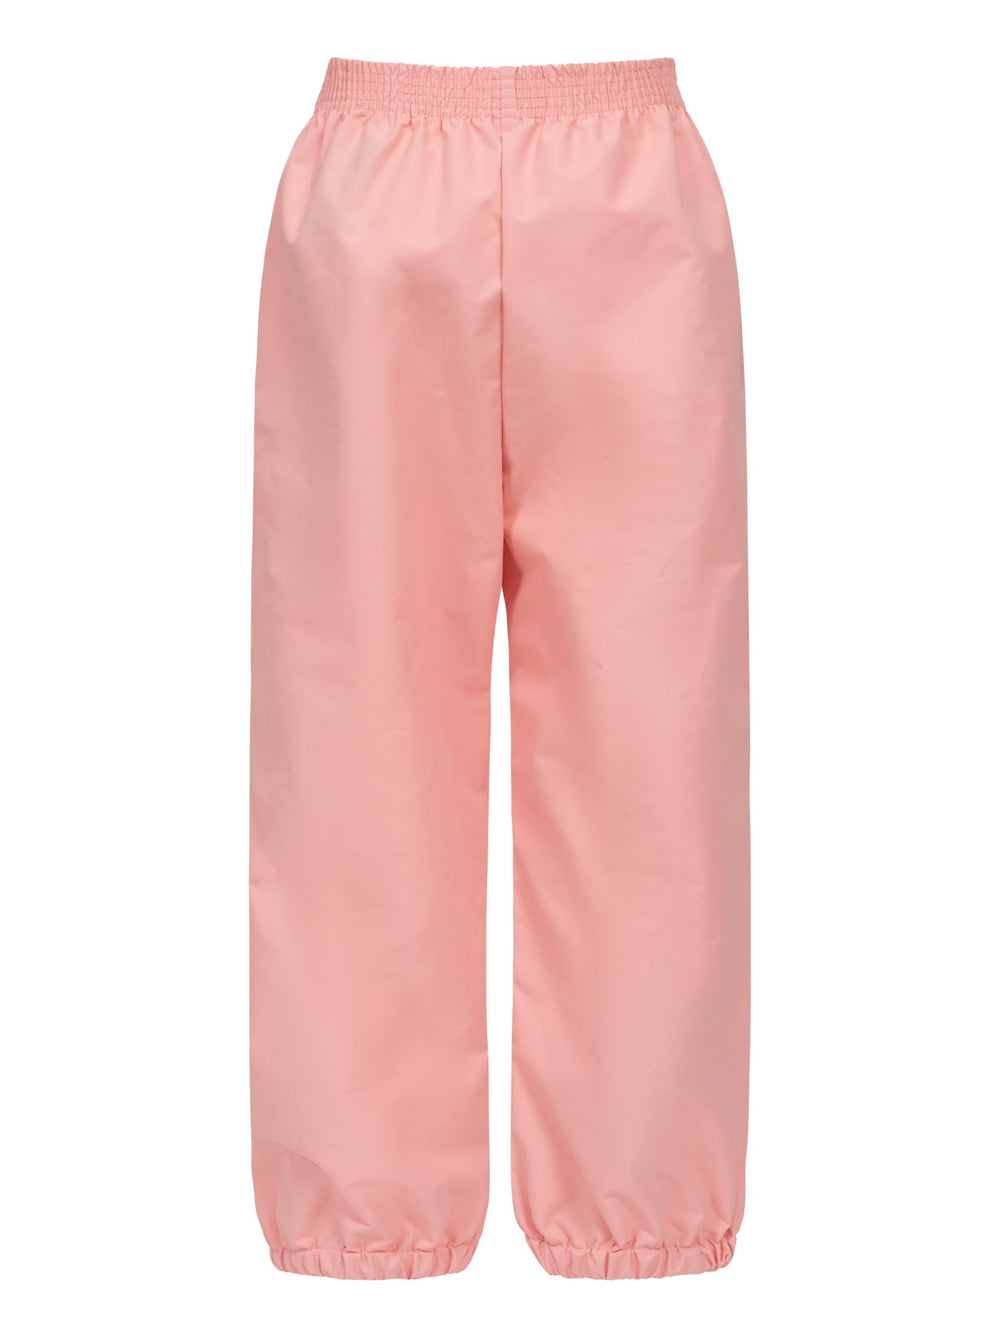 Splash Pant - Apricot Blush